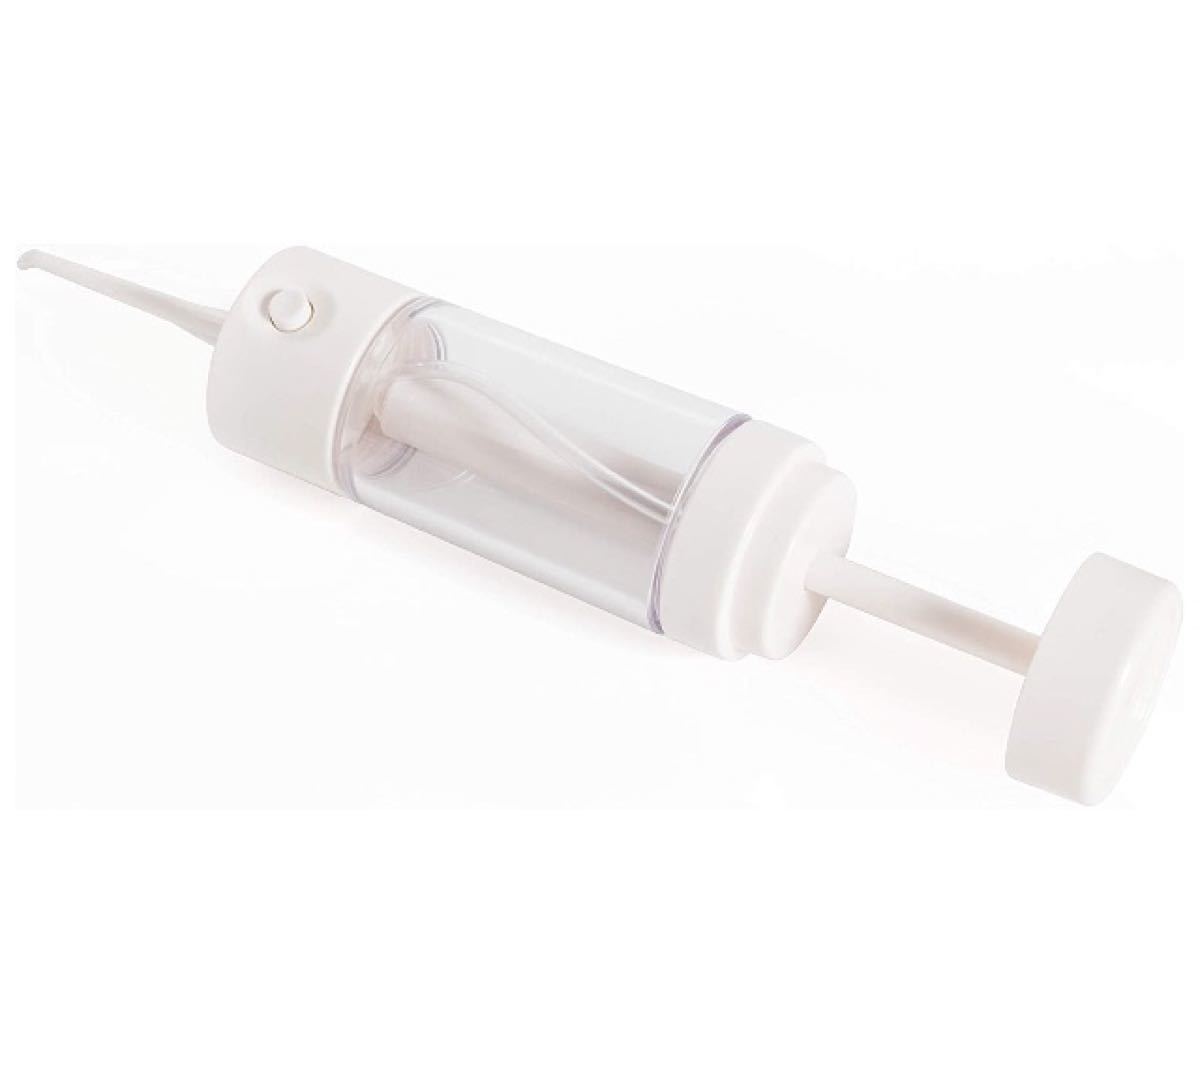 口腔洗浄機 300ml 防水 携帯型 プレゼント ホワイト 簡易手動式の水圧口腔洗浄器 広口型口腔洗浄器  